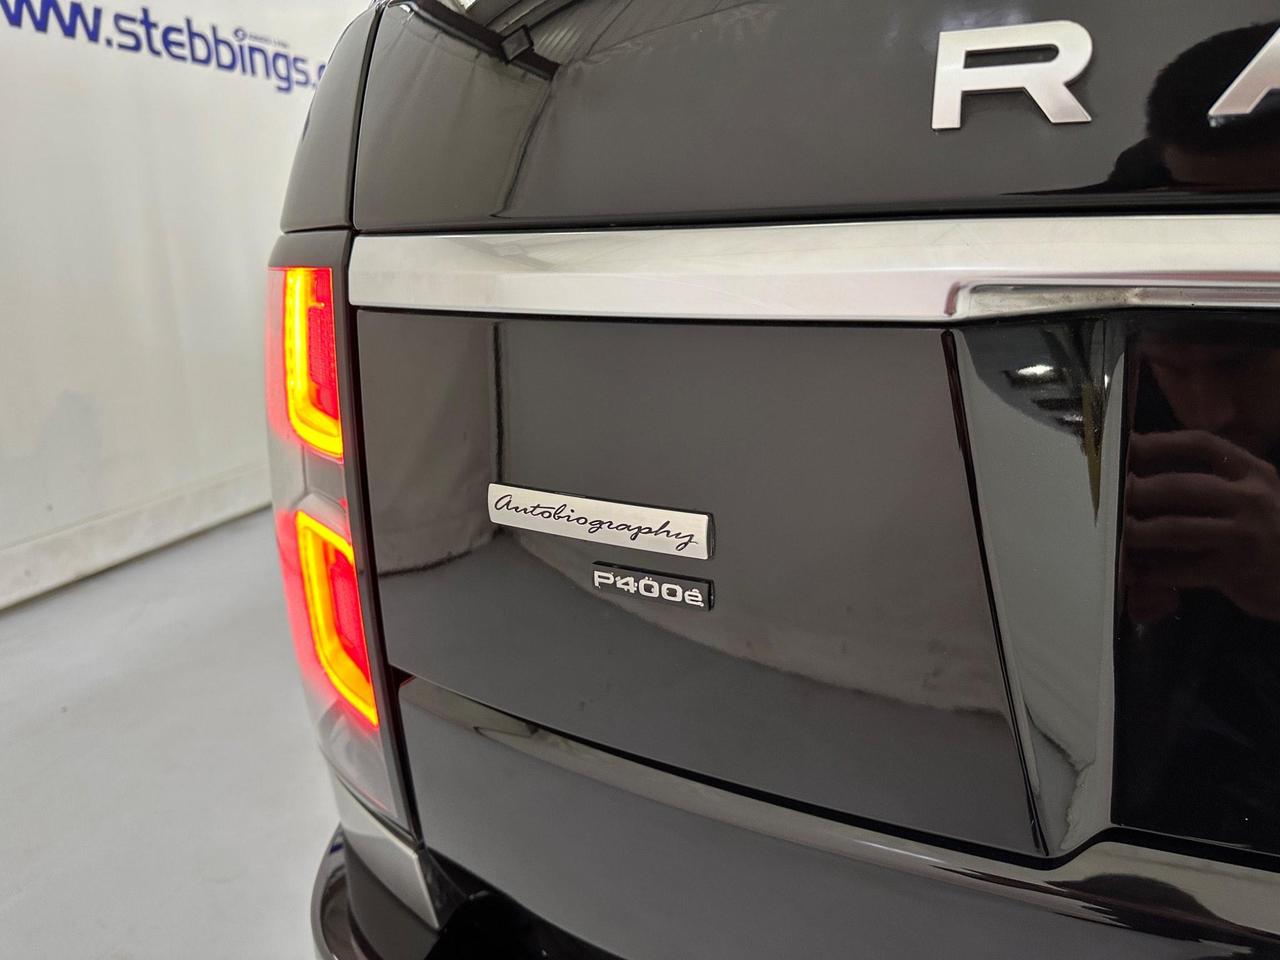 Land Rover Range Rover YX70LBL